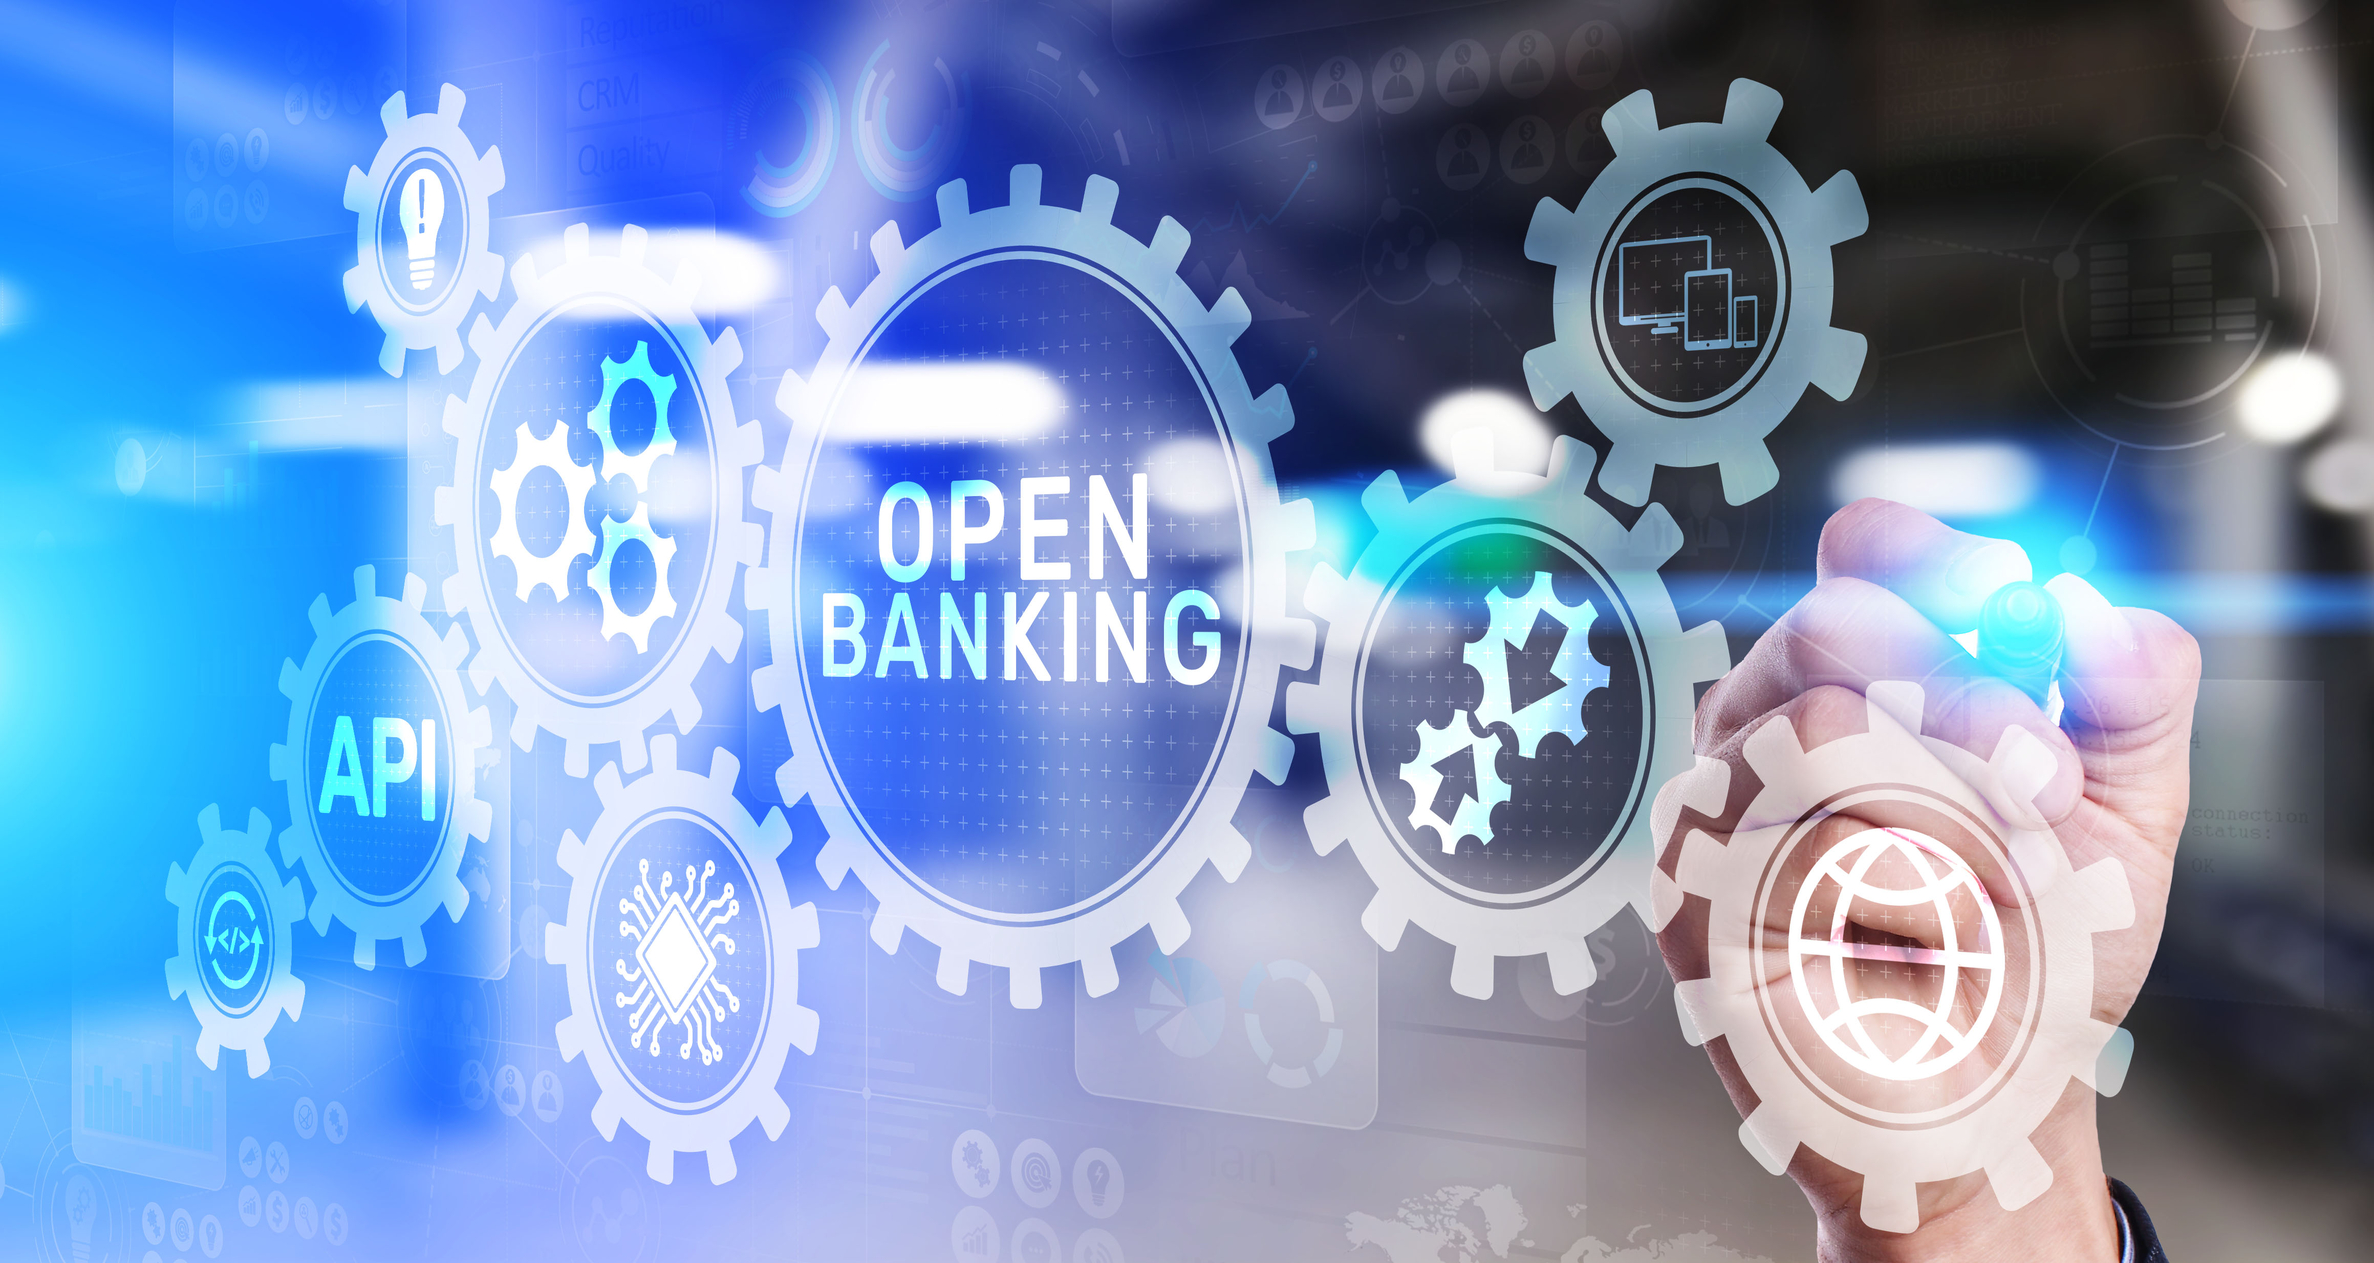 Open Banking ช่วยสร้างคุณค่าบริการทางการเงิน ทิศทางธุรกิจของภาคธนาคารและสถาบันการเงินในเอเชียตะวันออกเฉียงใต้